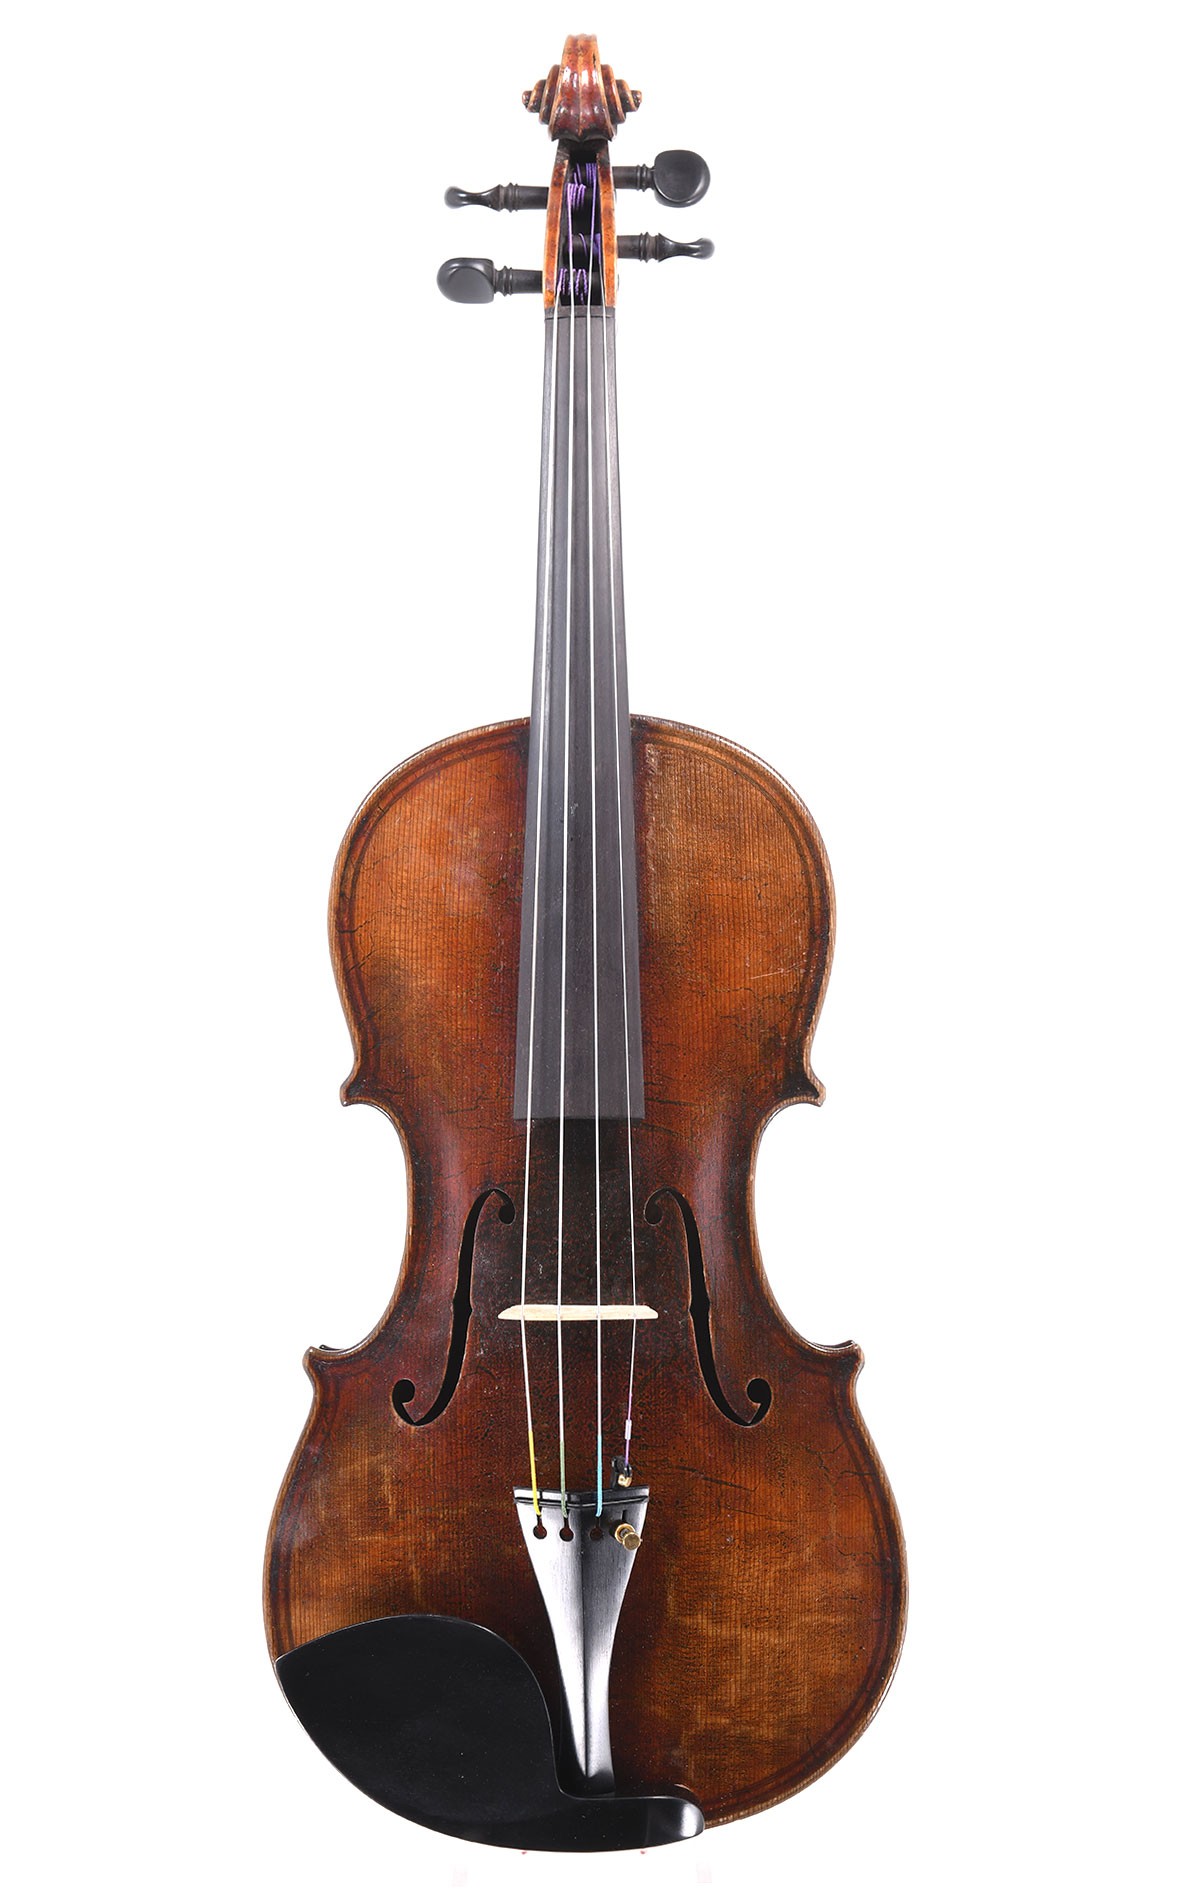 maggini violin characteristics - maggini violin for sale